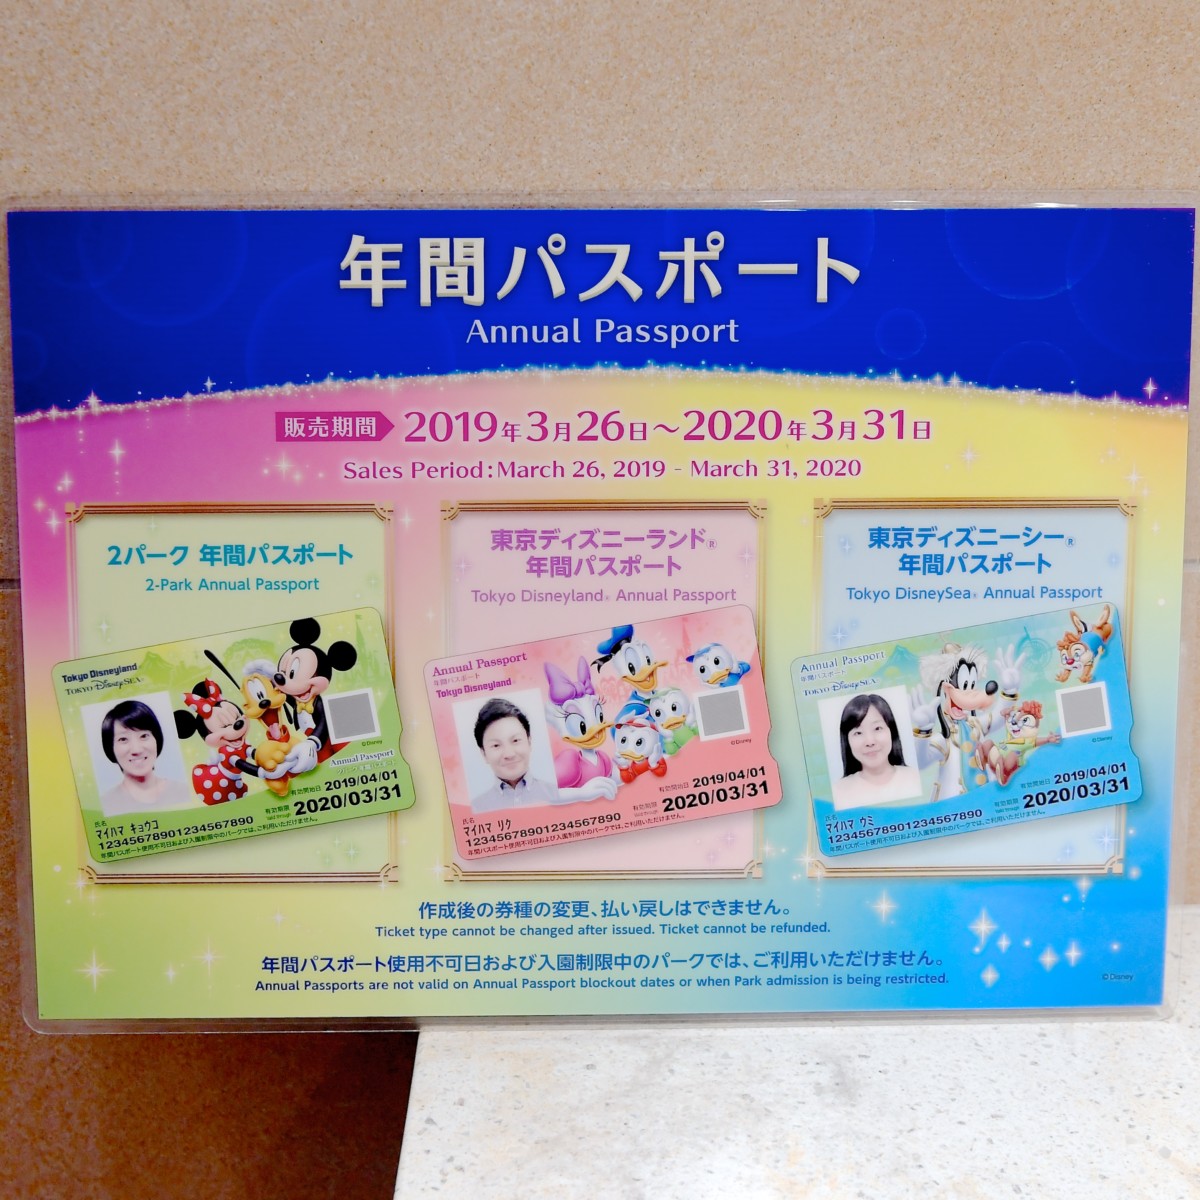 東京ディズニーランド 東京ディズニーシー新年間パスポートデザイン 19年はイラストデザイン 東京ディズニーリゾート年間パスポート